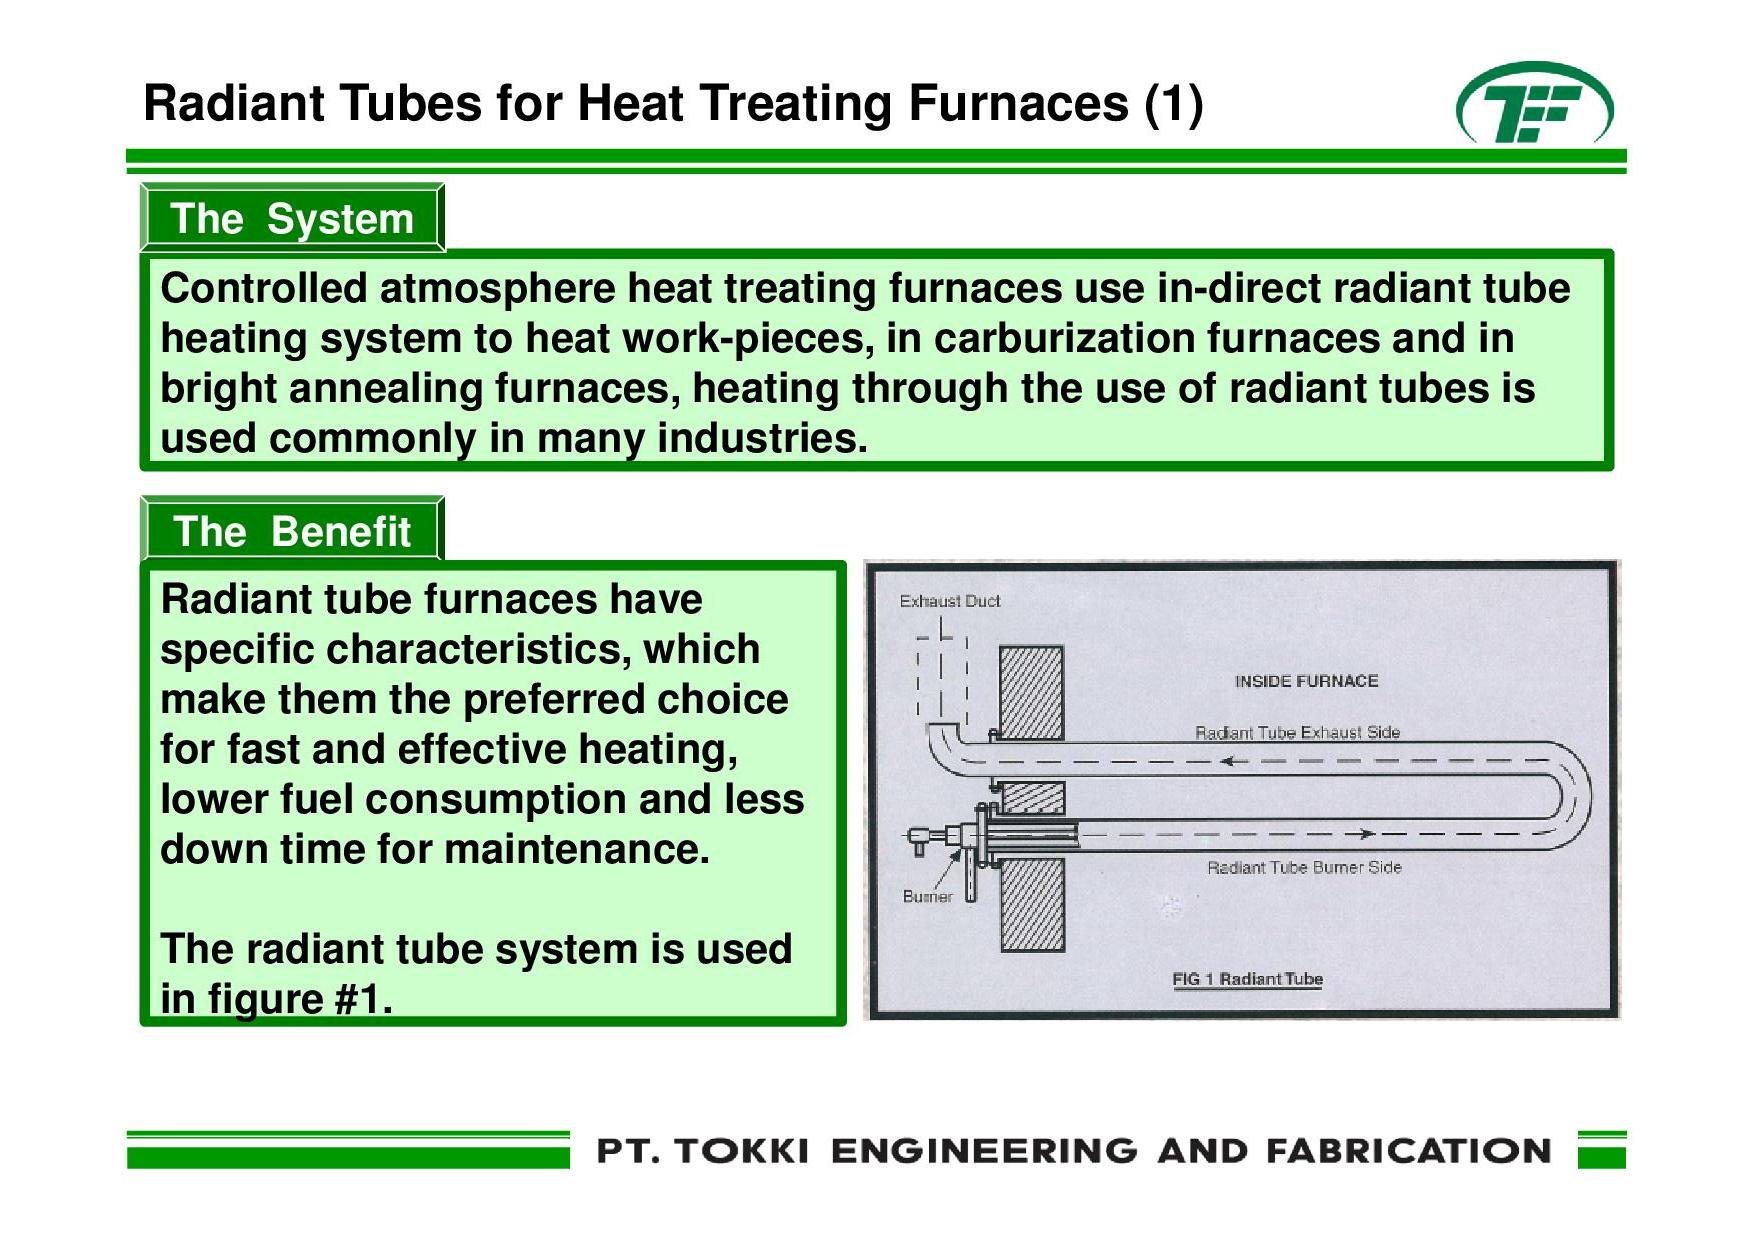 Radiant Tube System